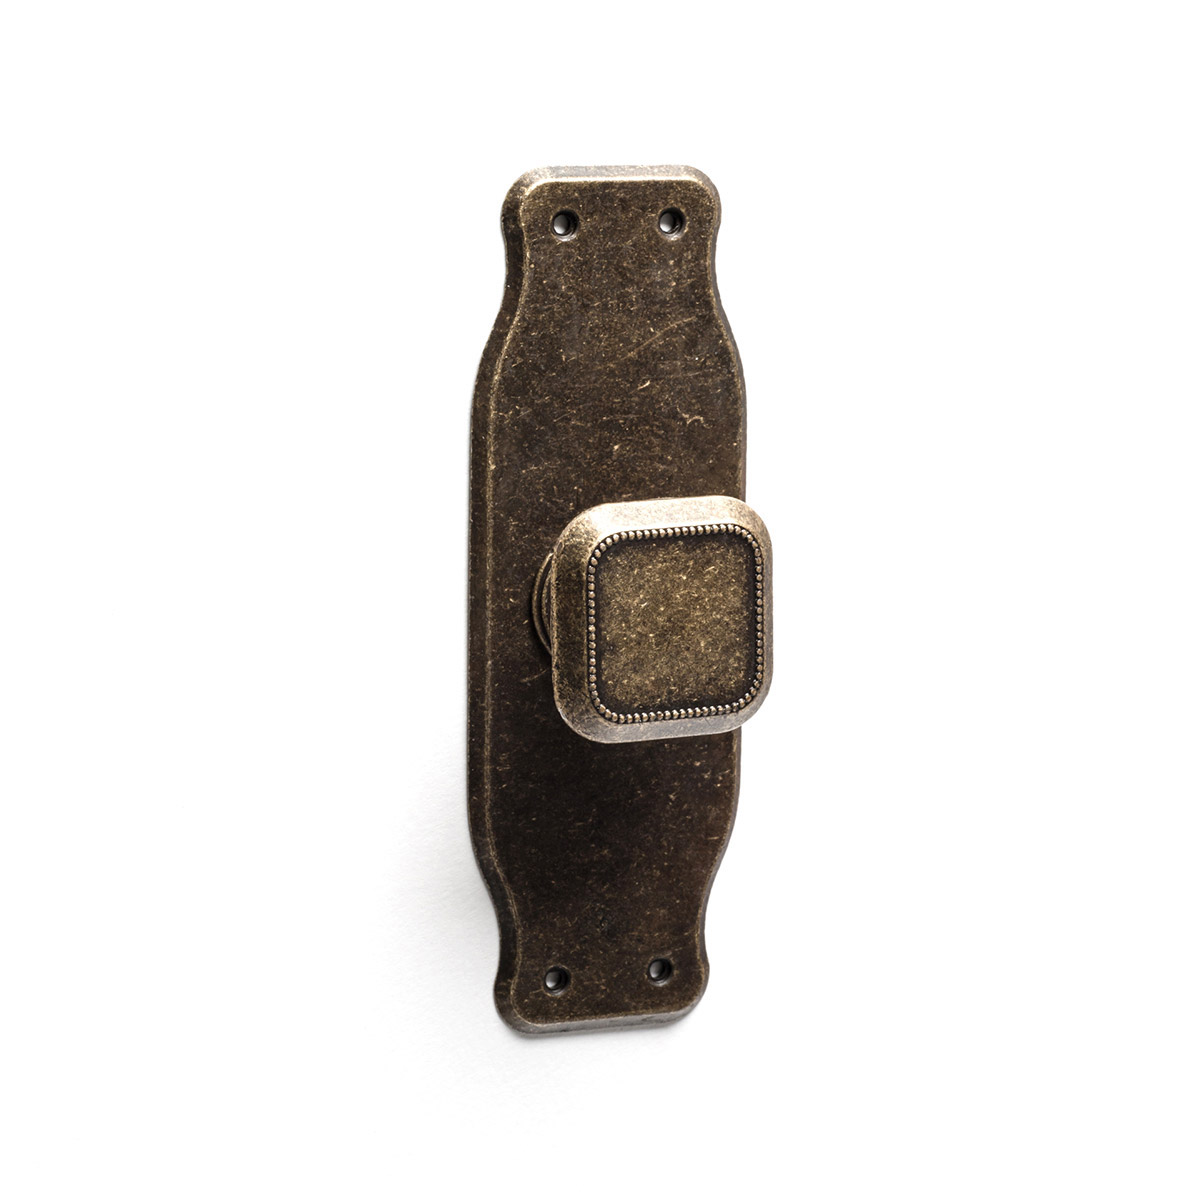 Pomo en placa con acabado cuero viejo de zamak, dimensiones: 110x38x24mm